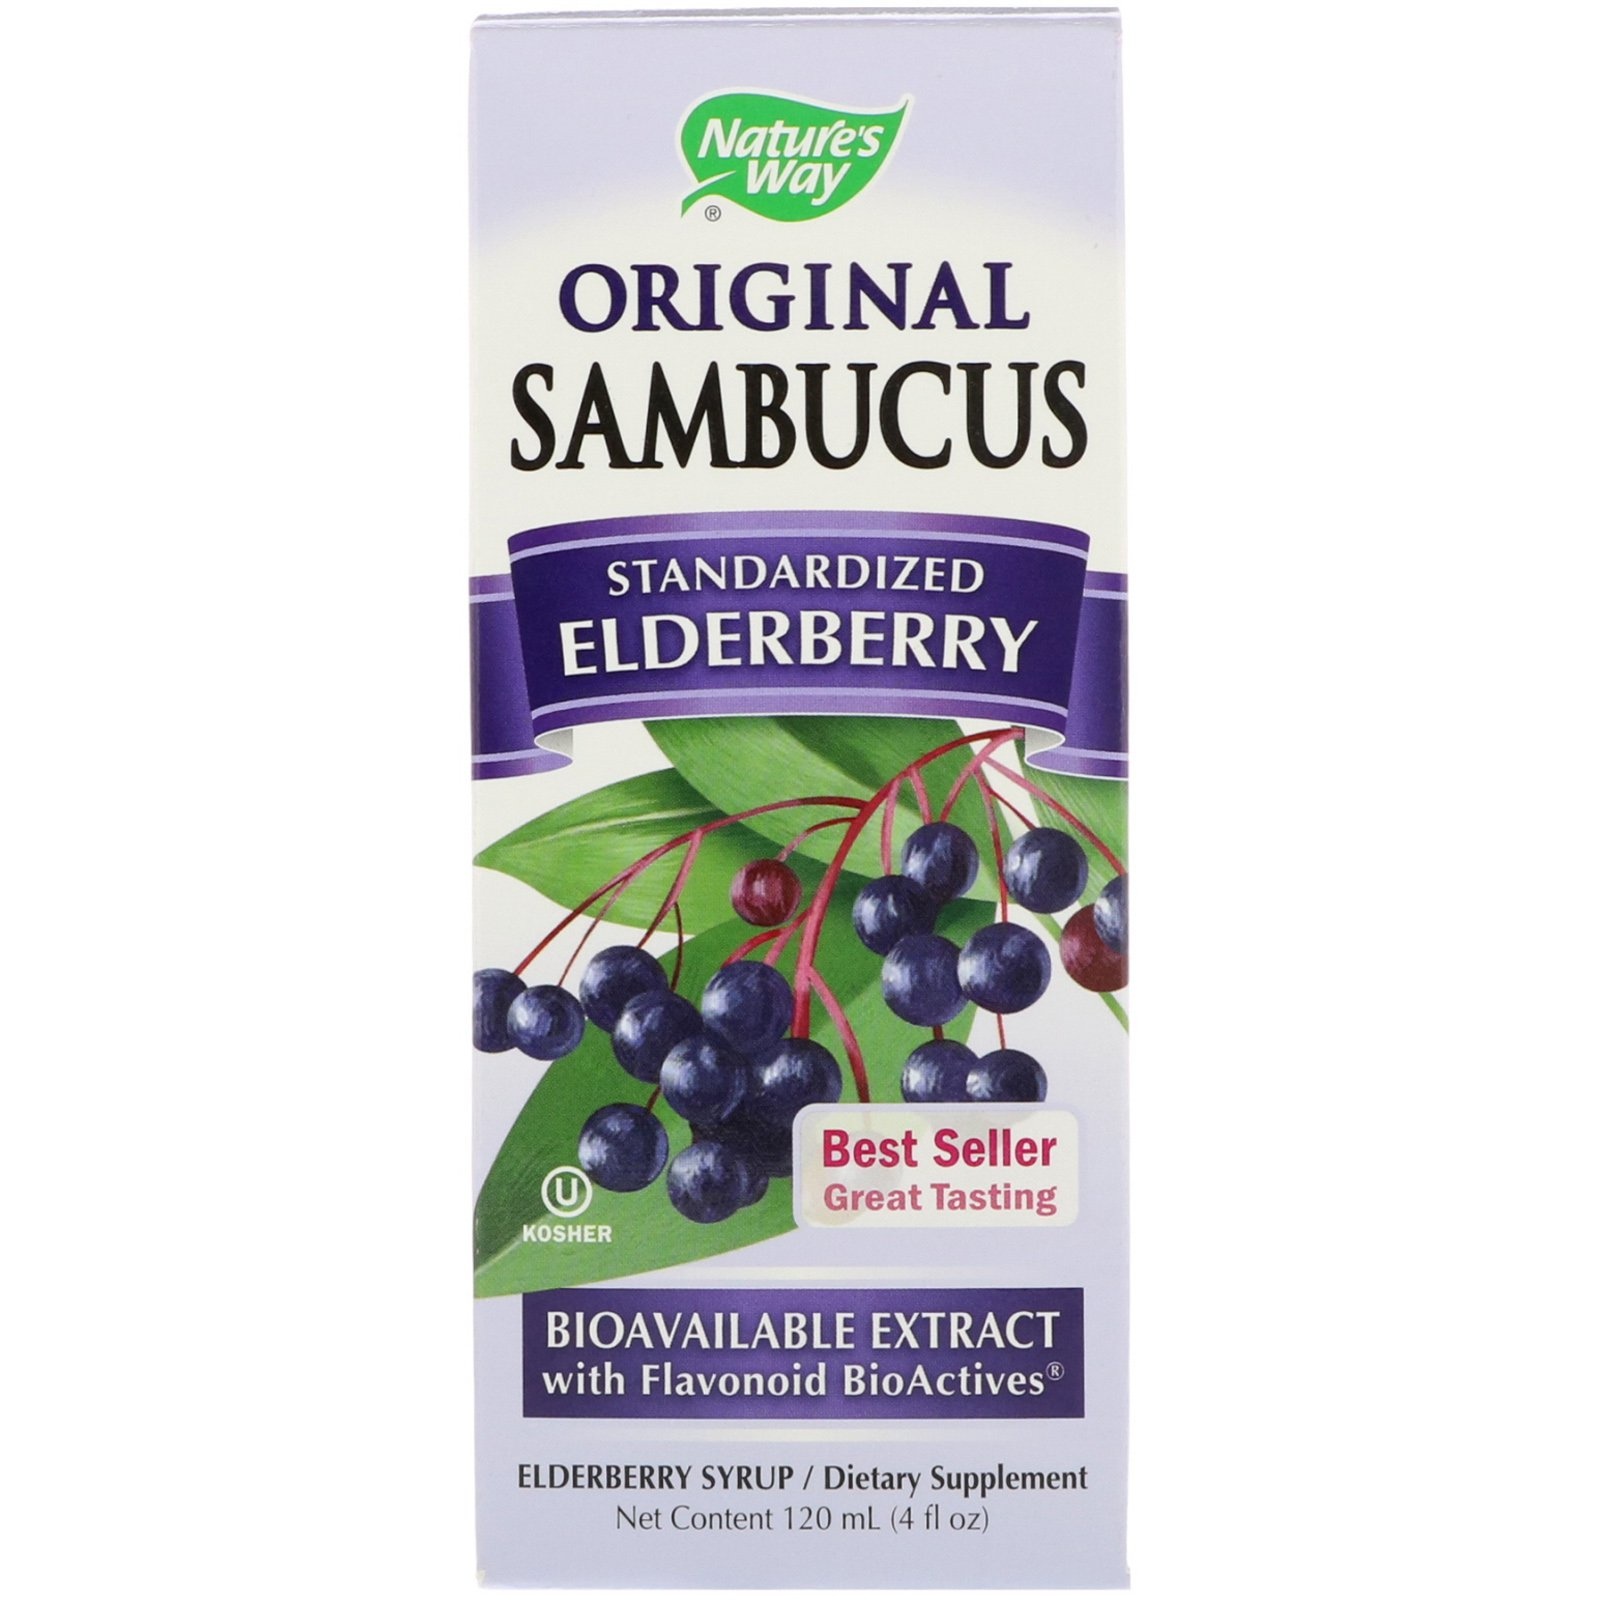 NATURE'S WAY SAMBUCUS-Organic Elderberry 120 ml